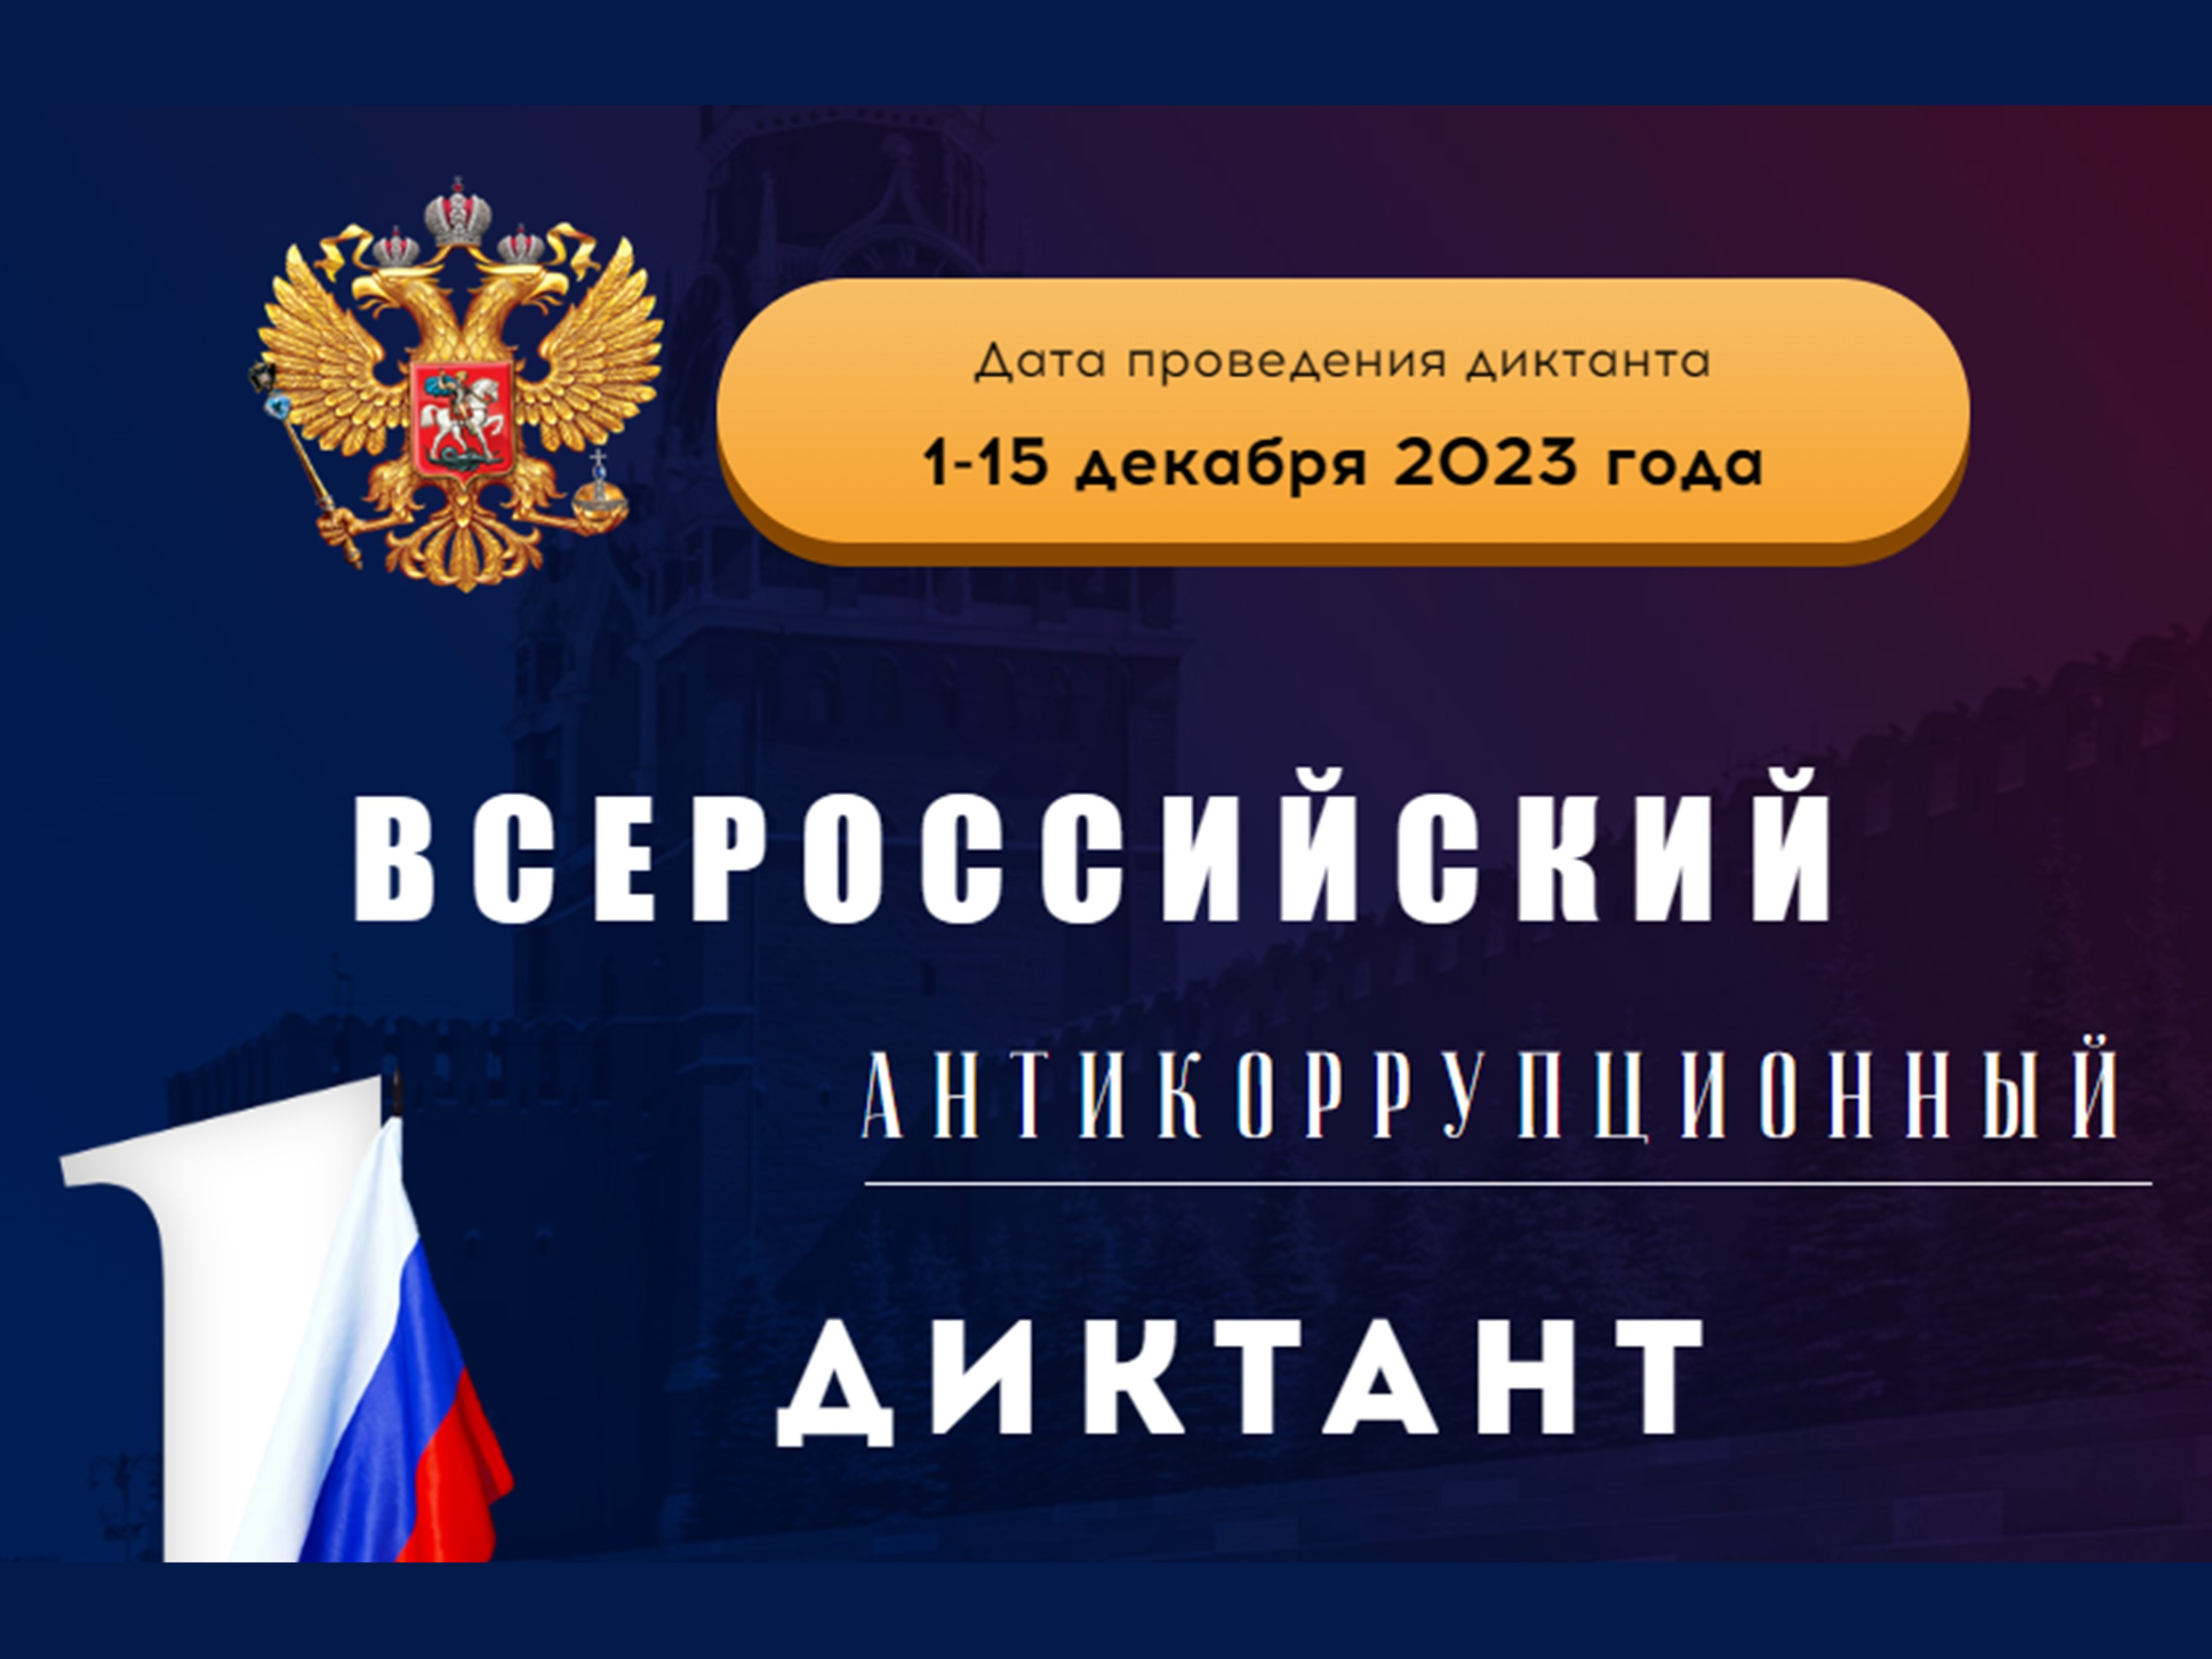 Всероссийский антикоррупционный диктант будет проводиться в четвертый раз.